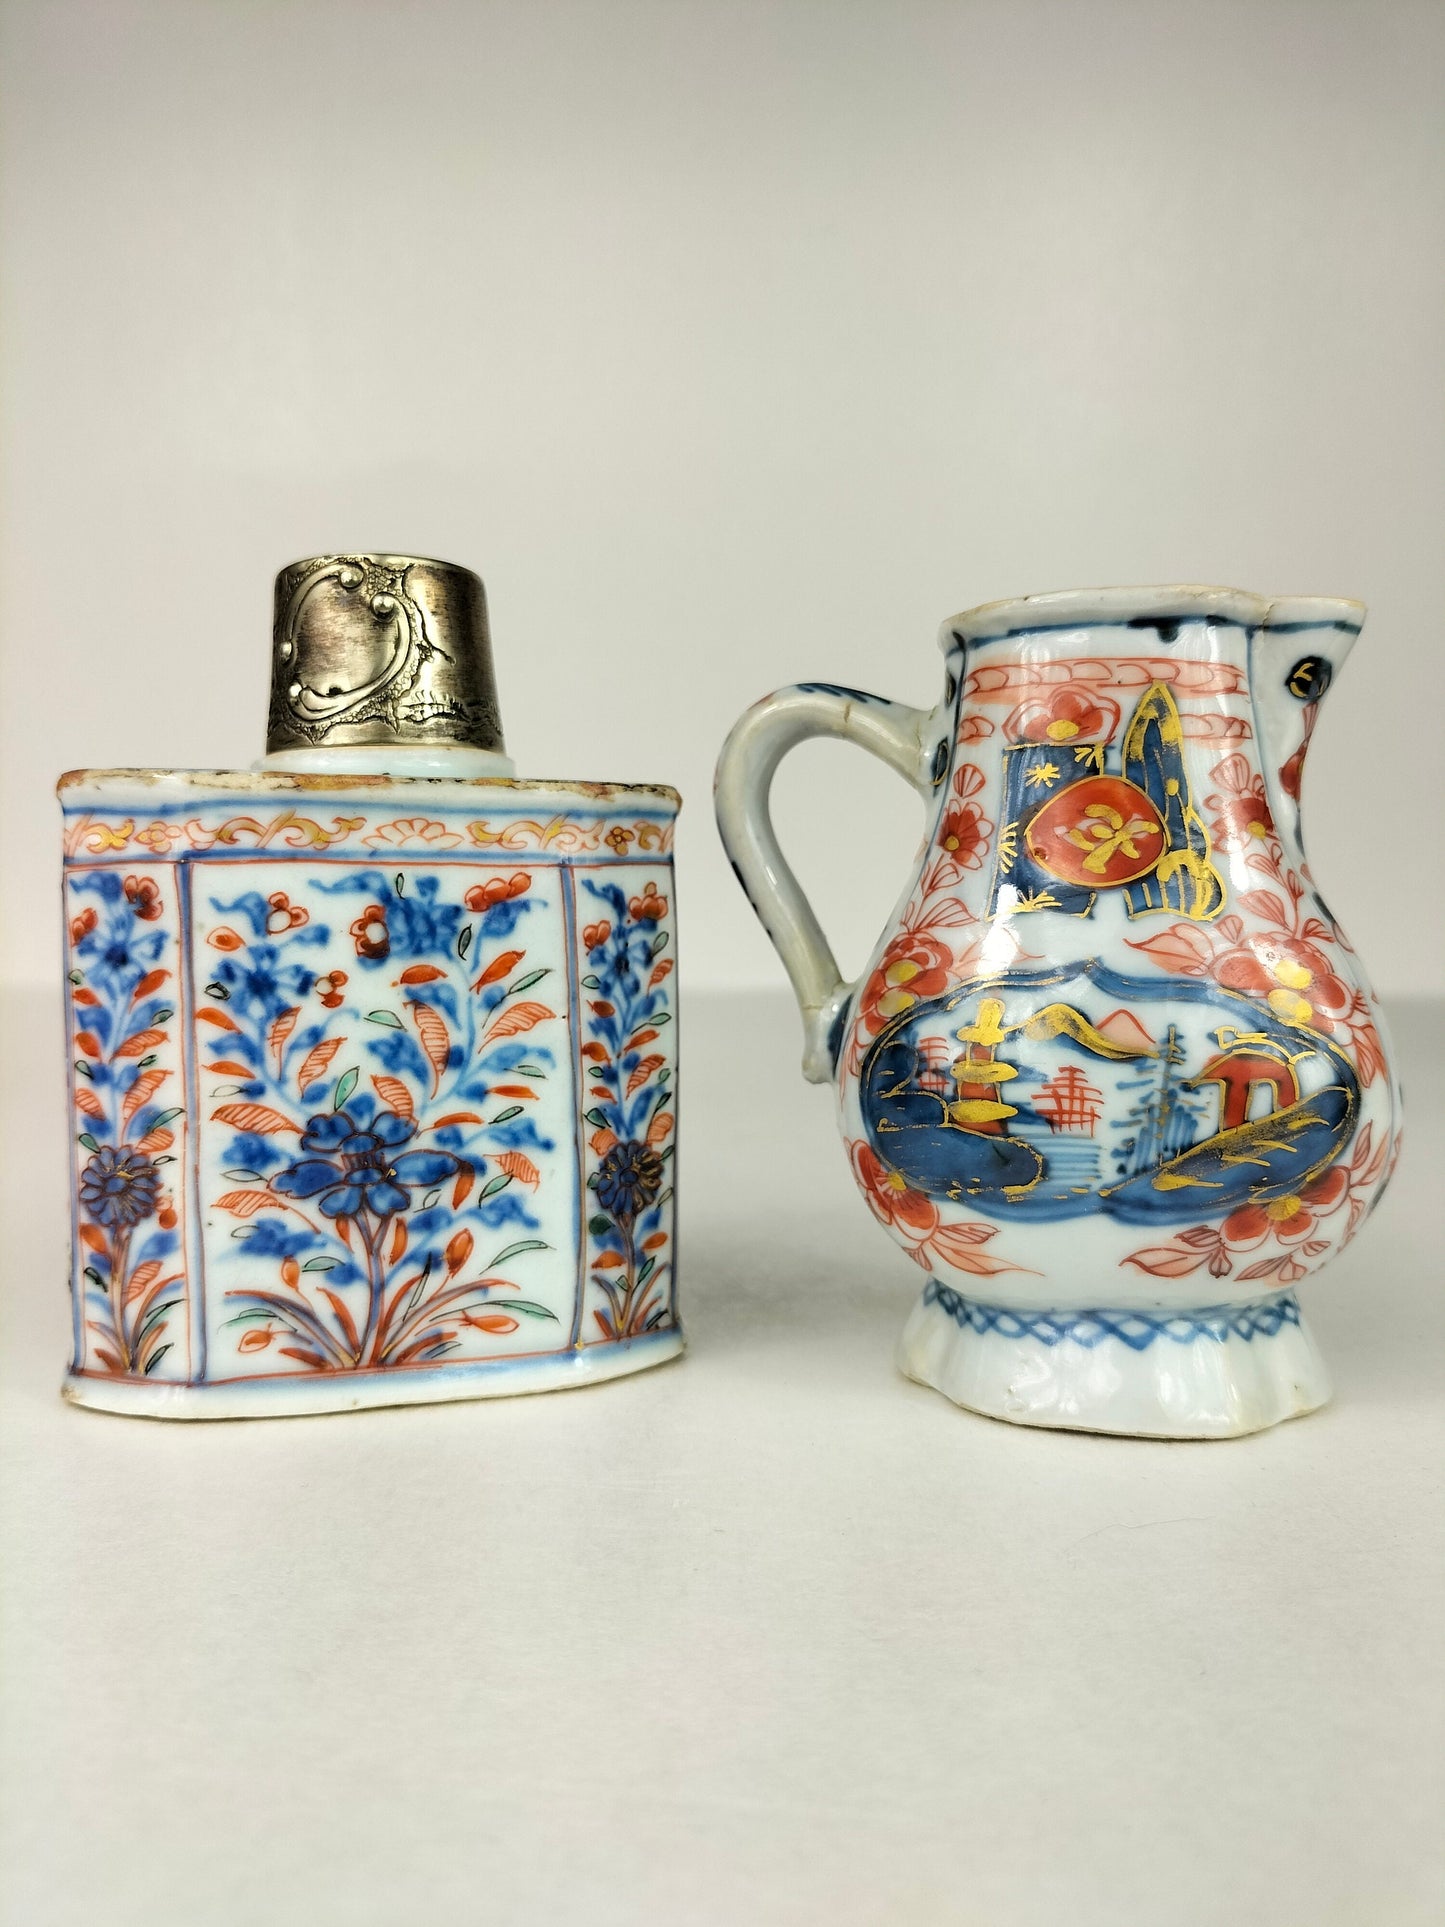 装饰有花卉图案的古董中国伊万里茶罐 // 清朝 - 18 世纪 - 康熙